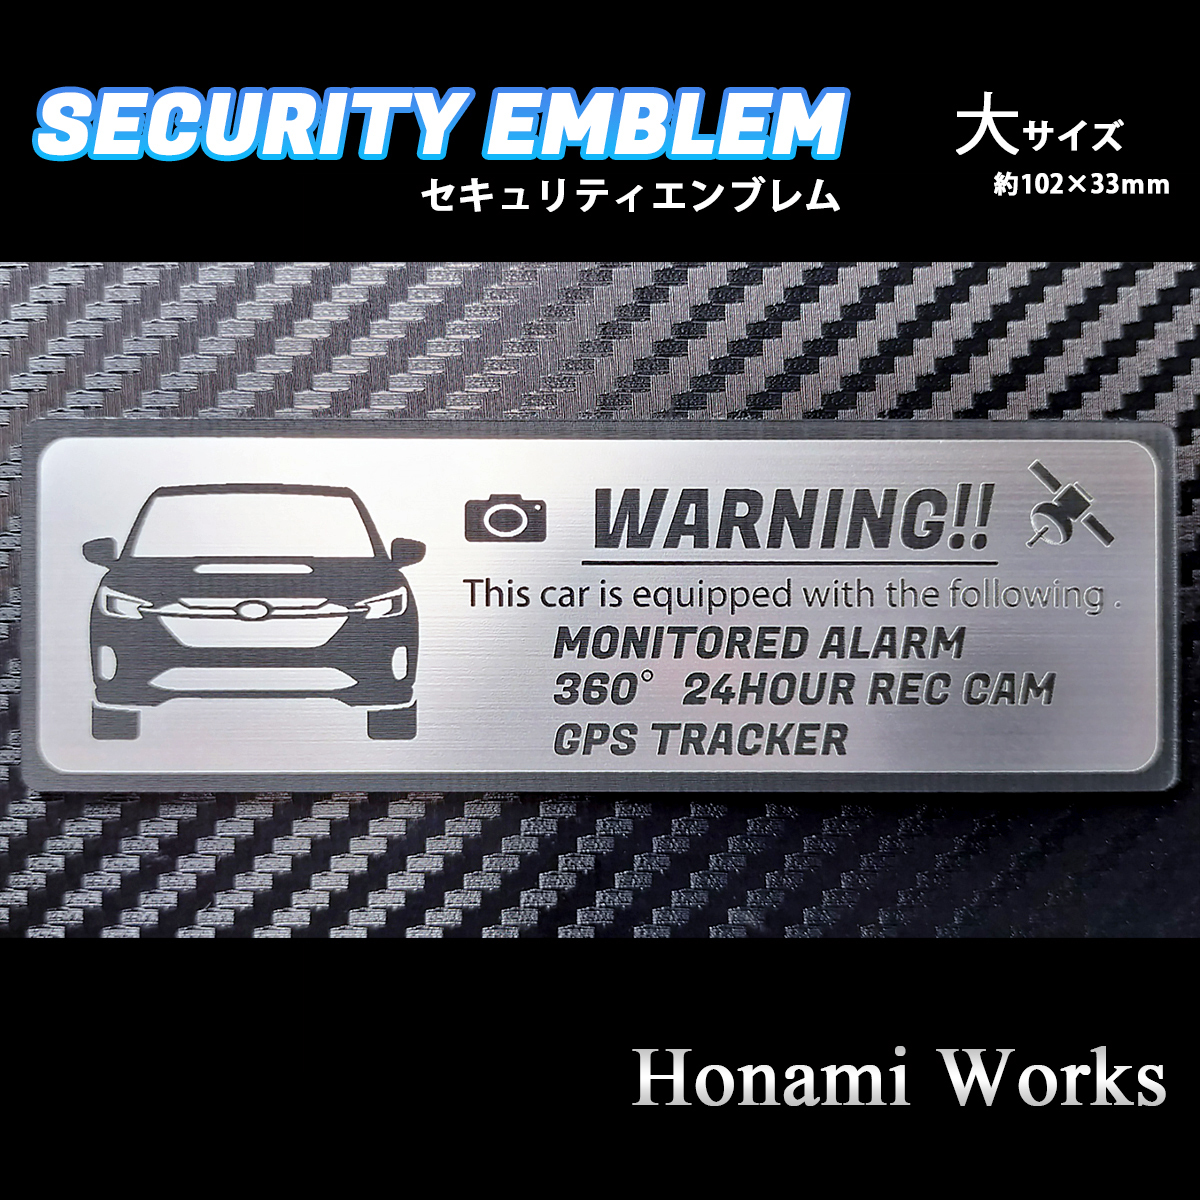  анонимность * гарантия! новая модель Levorg Ray задний система безопасности эмблема стикер большой противоугонное предотвращение преступления GPS SUBARU Subaru LEVORG LAYBACK